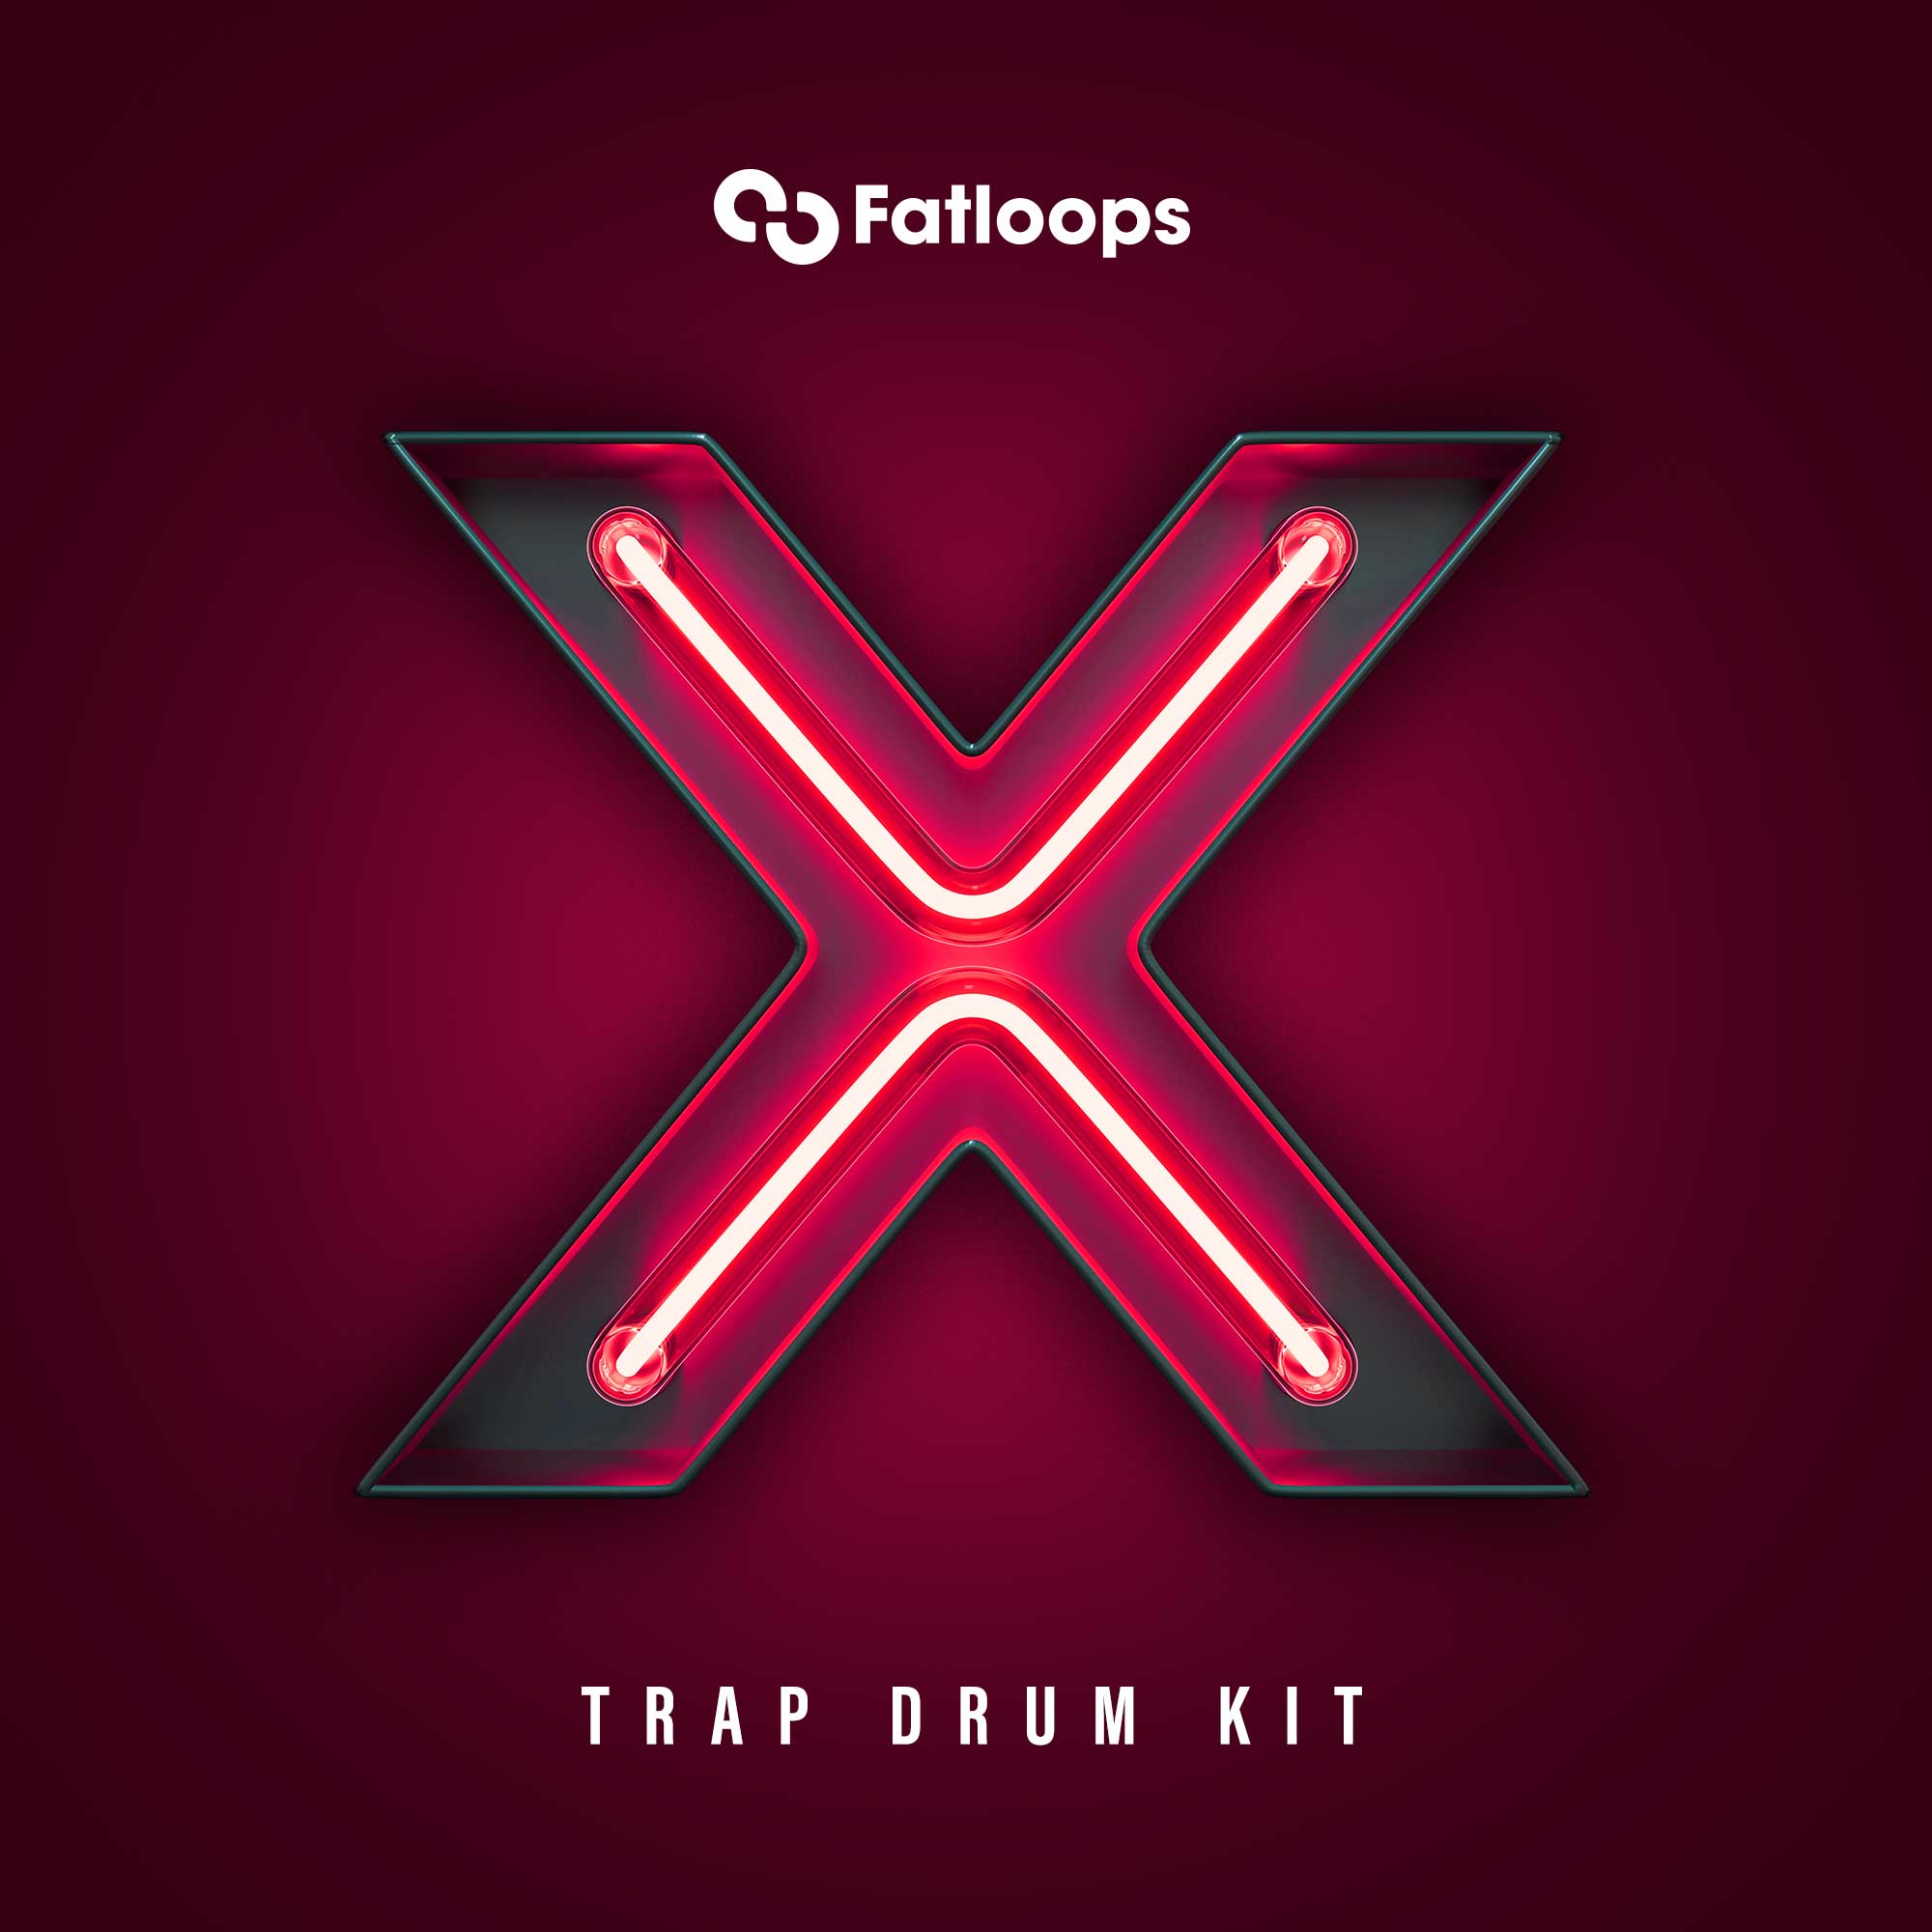 free trap drum kit samples